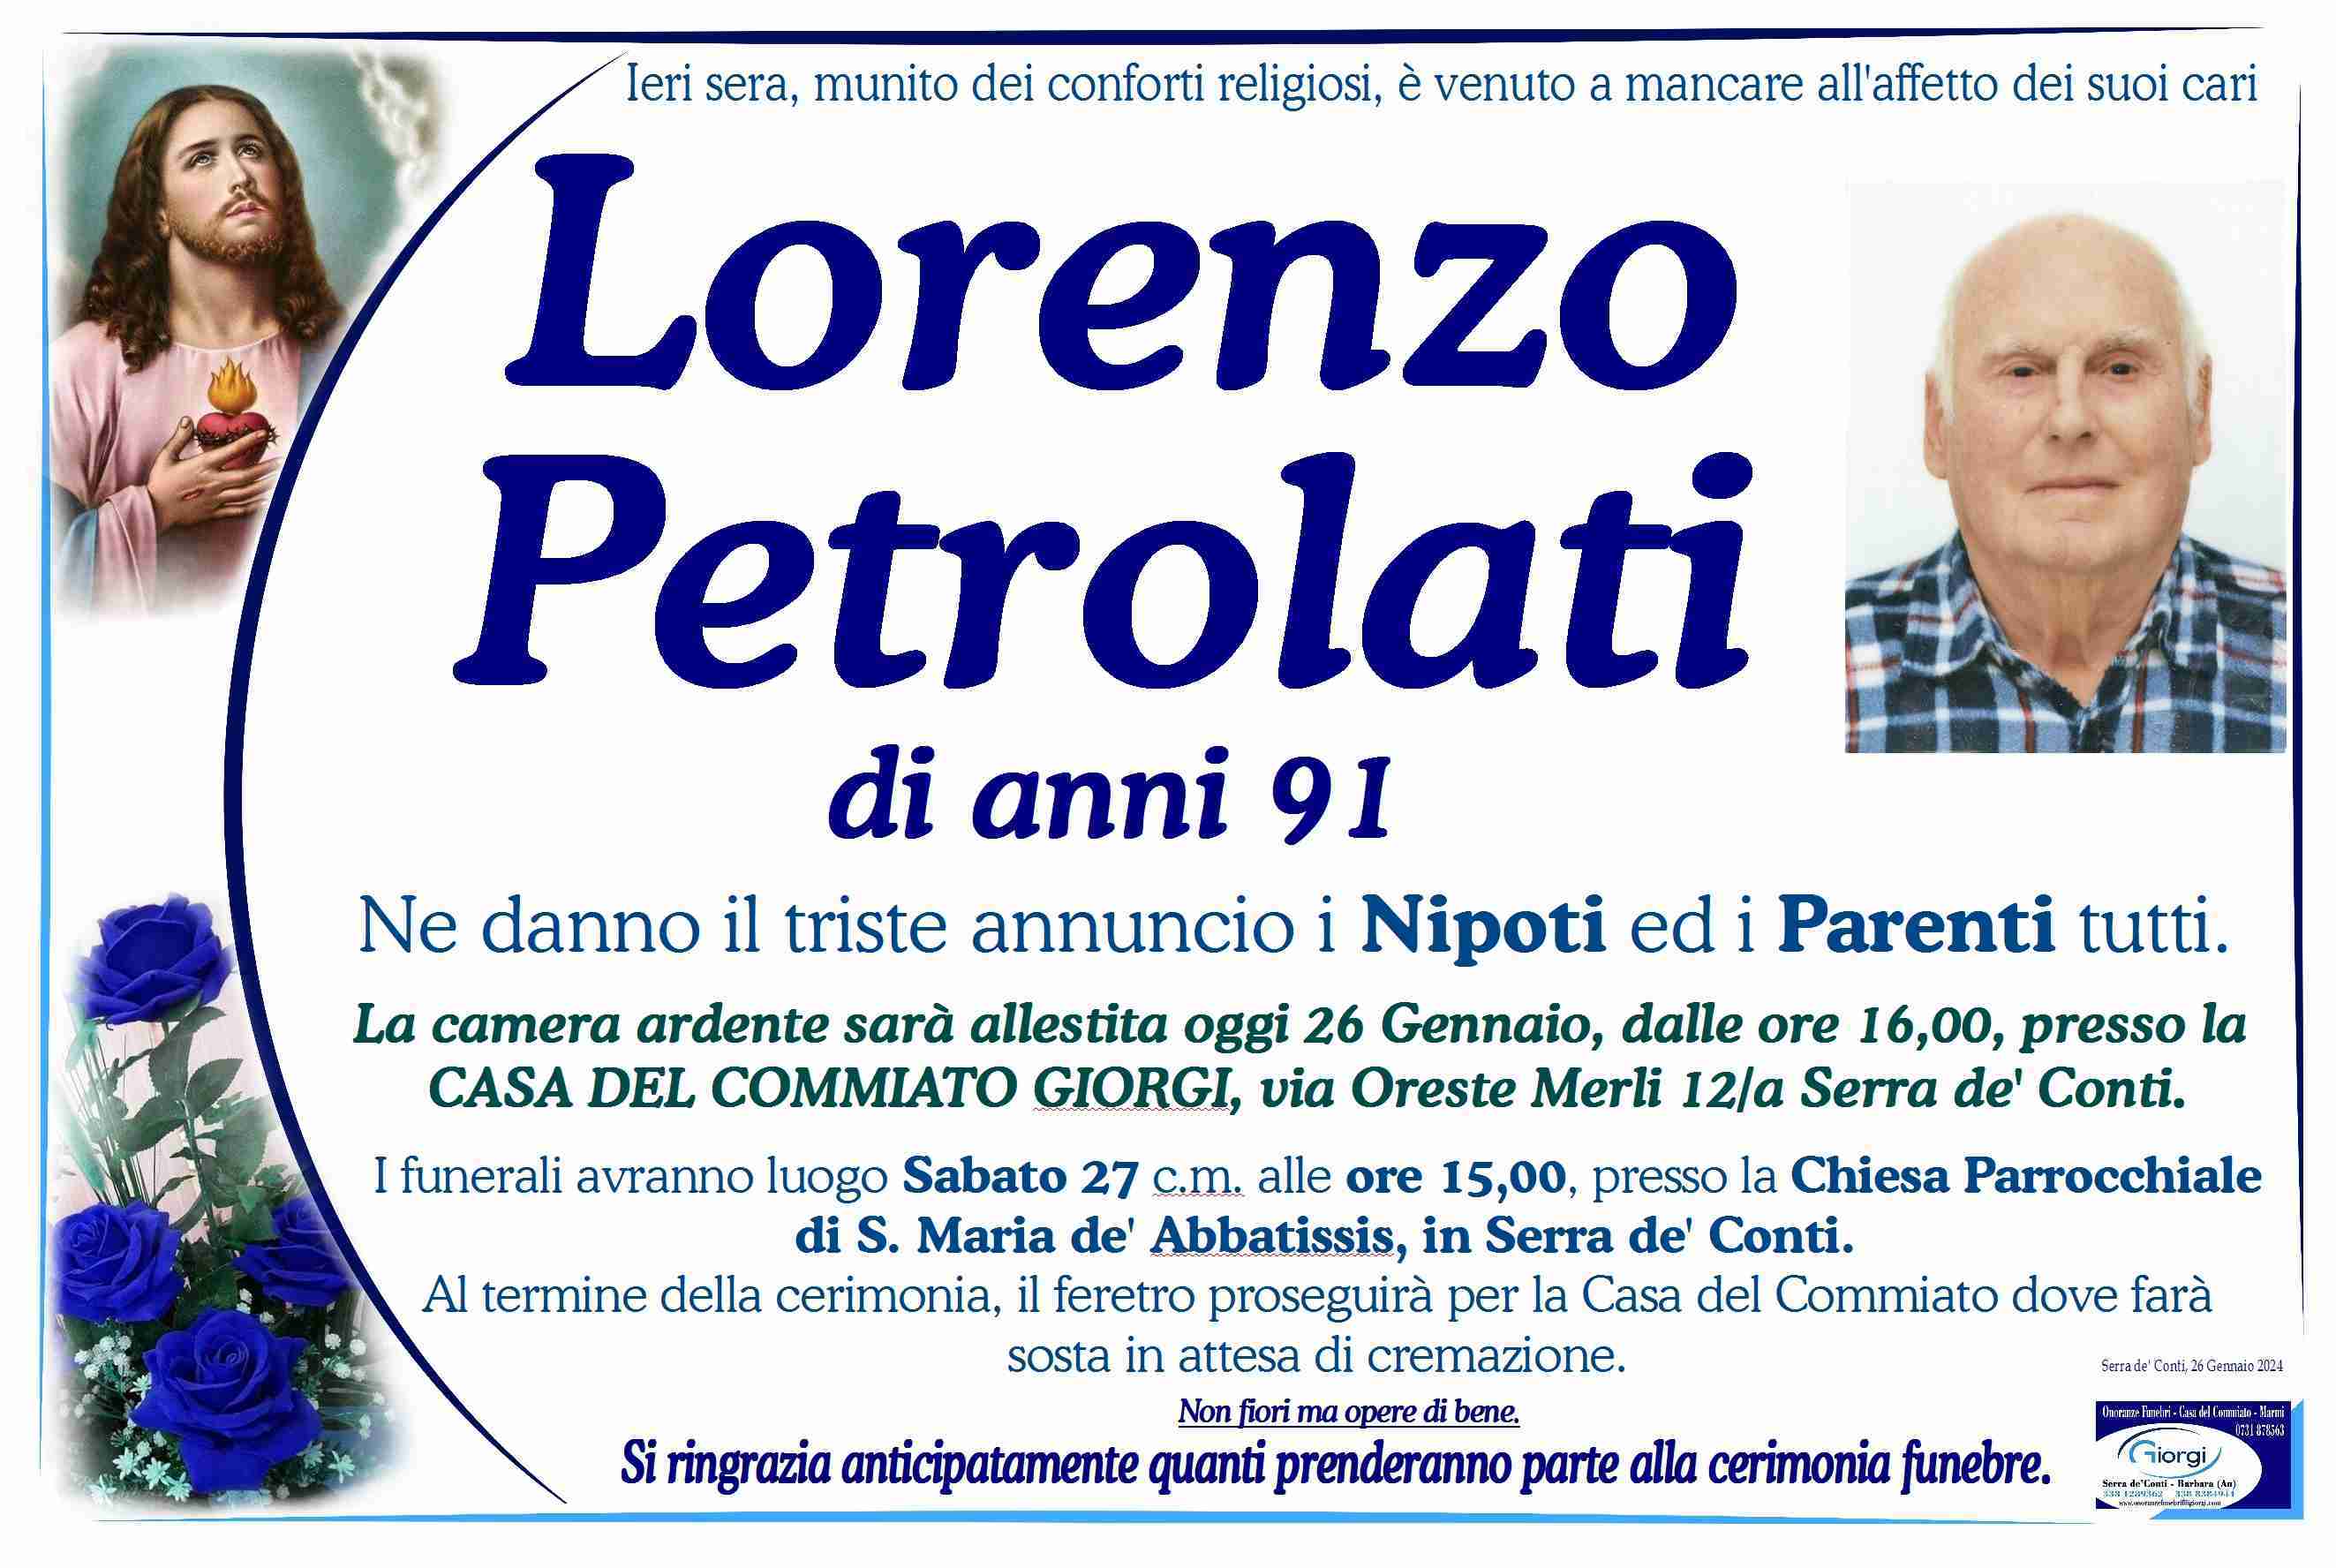 Lorenzo Petrolati